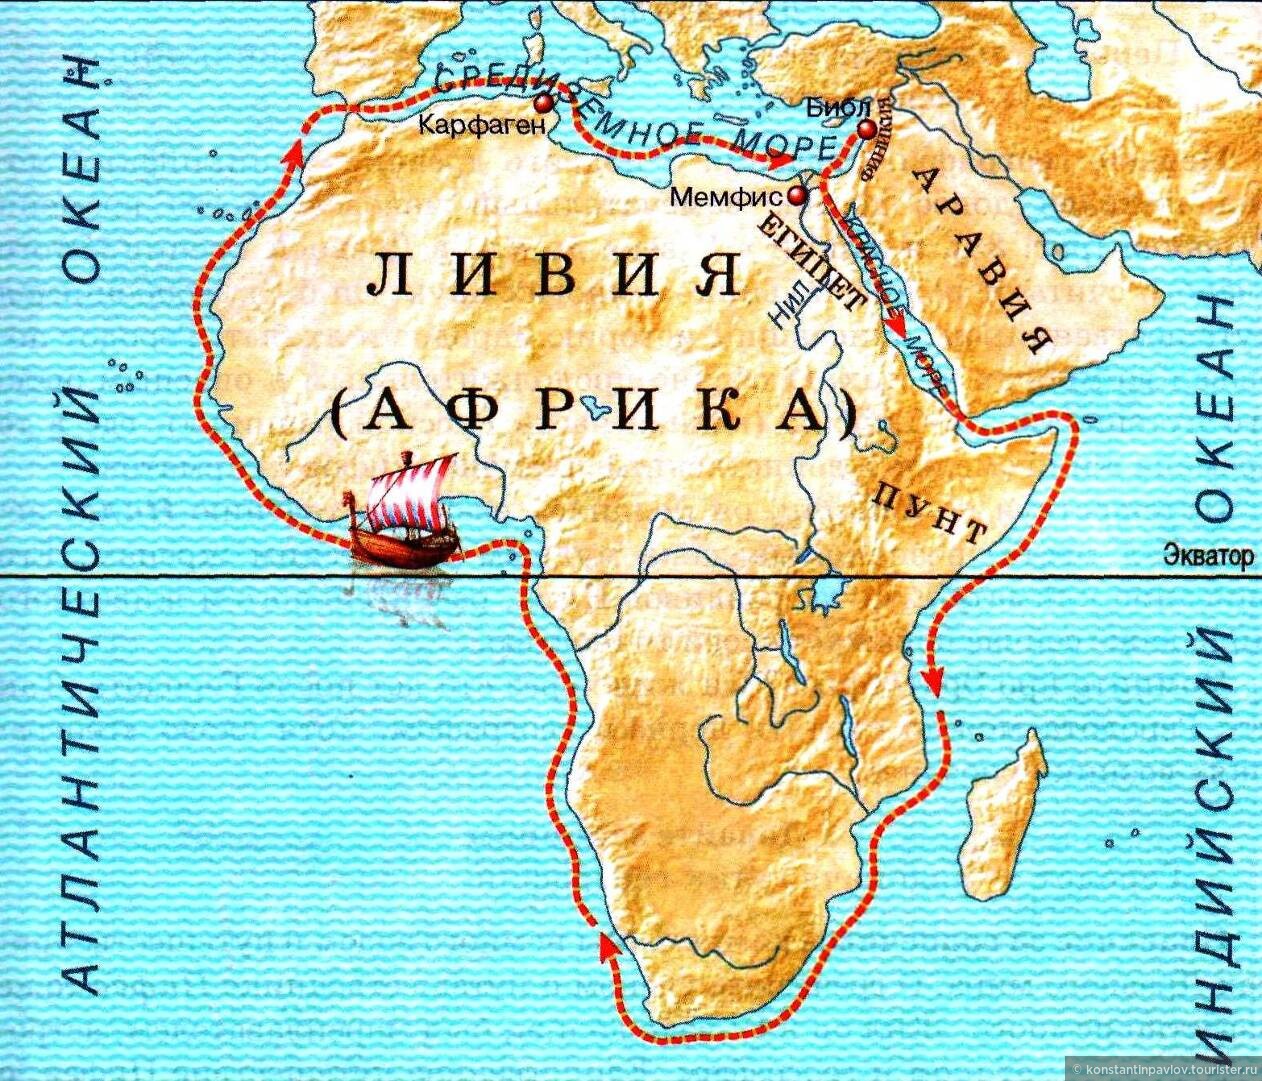 1 морское путешествие вокруг африки. Плавание финикийцев вокруг Африки маршрут. Плавание финикийцев вокруг Африки из Египта. Путь плавания финикийцев. Первое путешествие вокруг Африки совершили финикийцы.